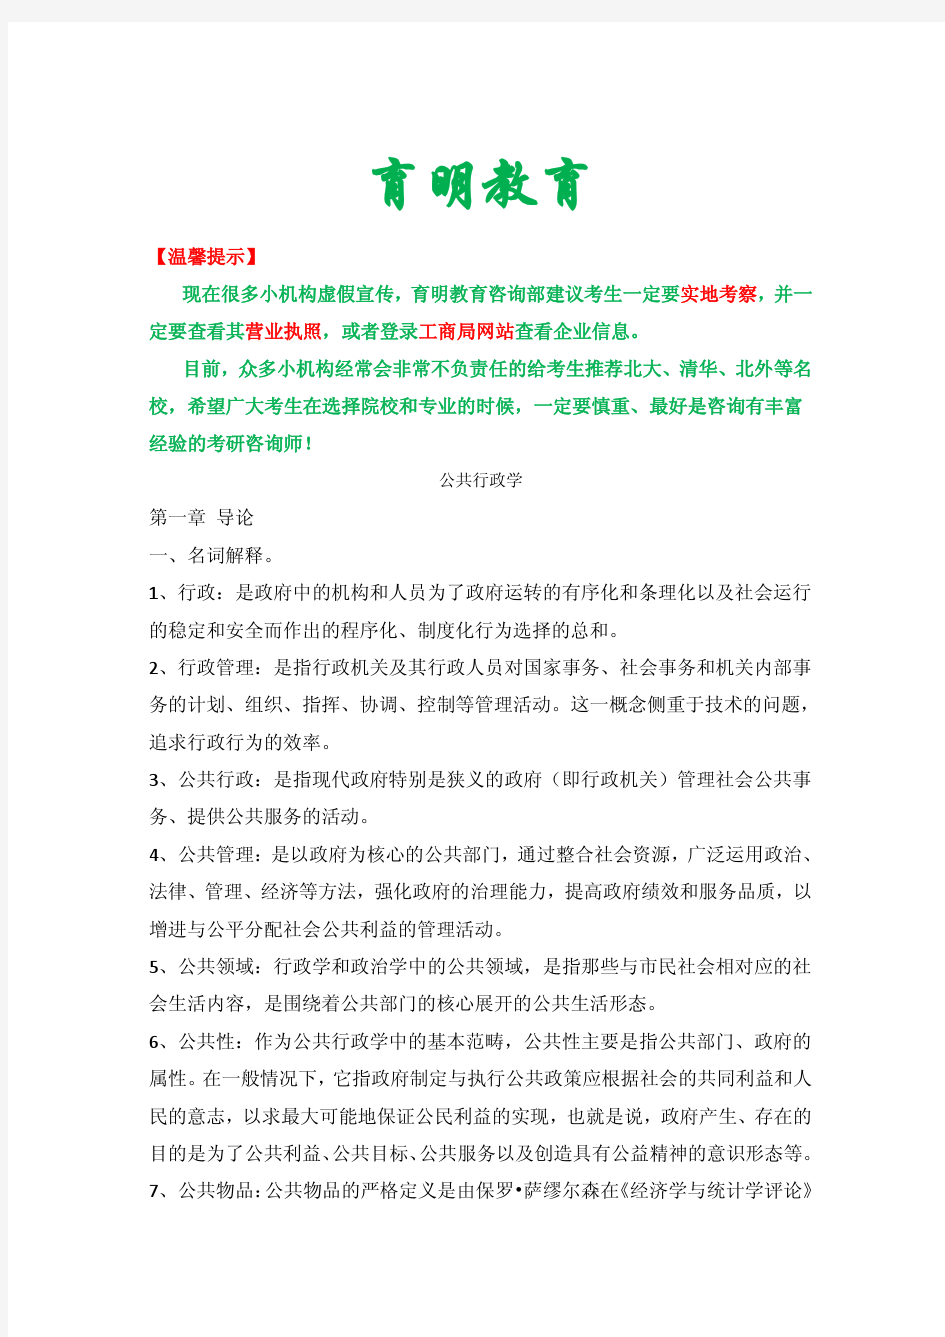 张康之 公共行政学 考研笔记 背诵版